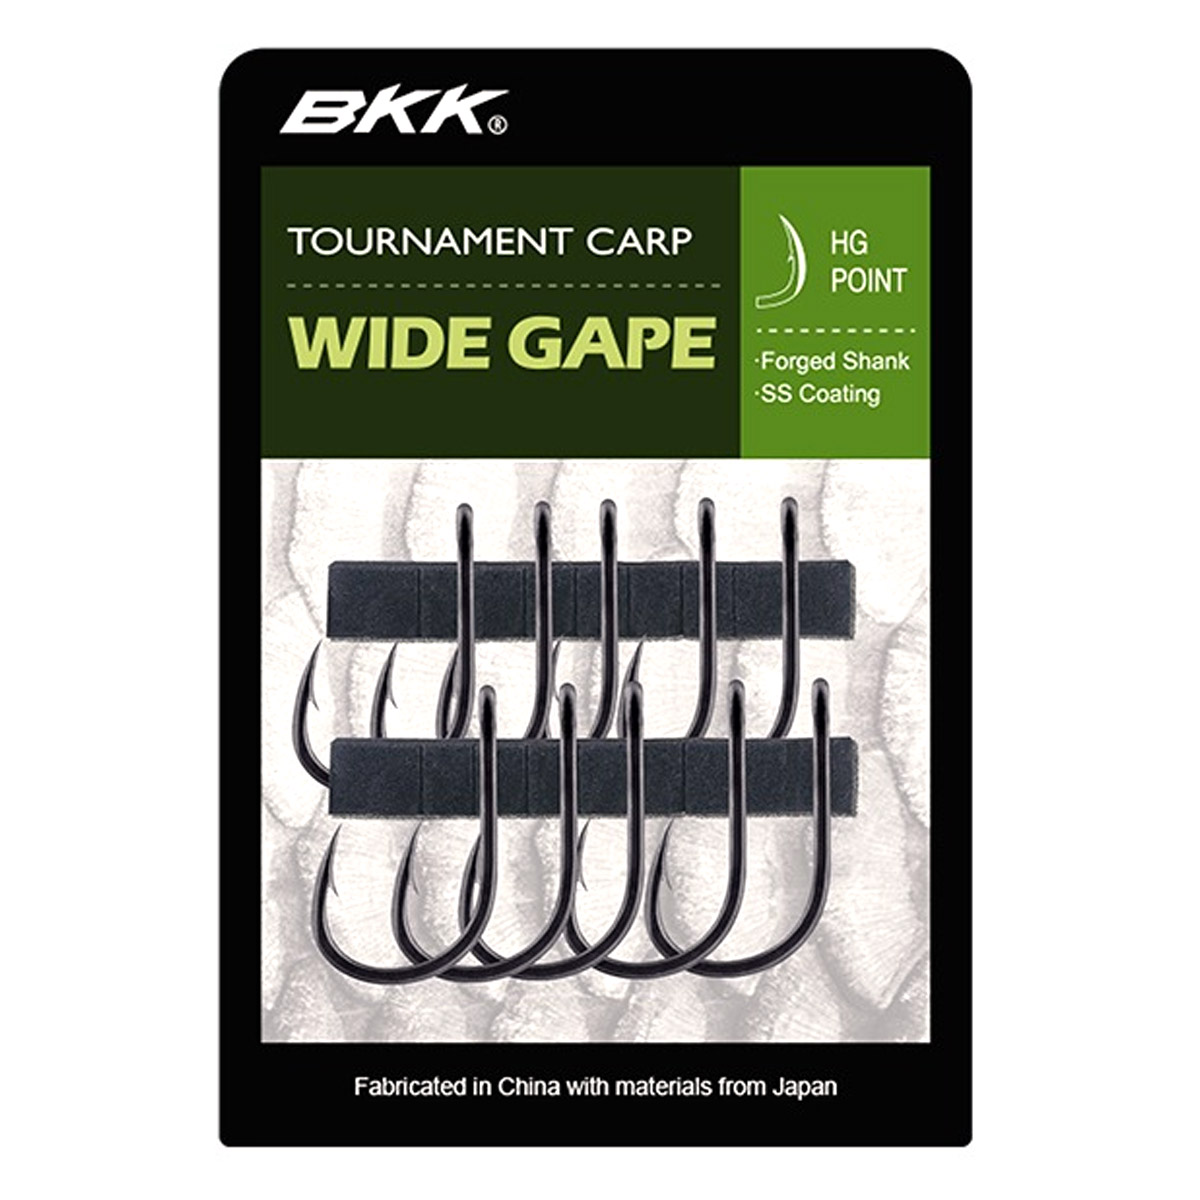 BKK Tournament Carp Wide Gape Hooks